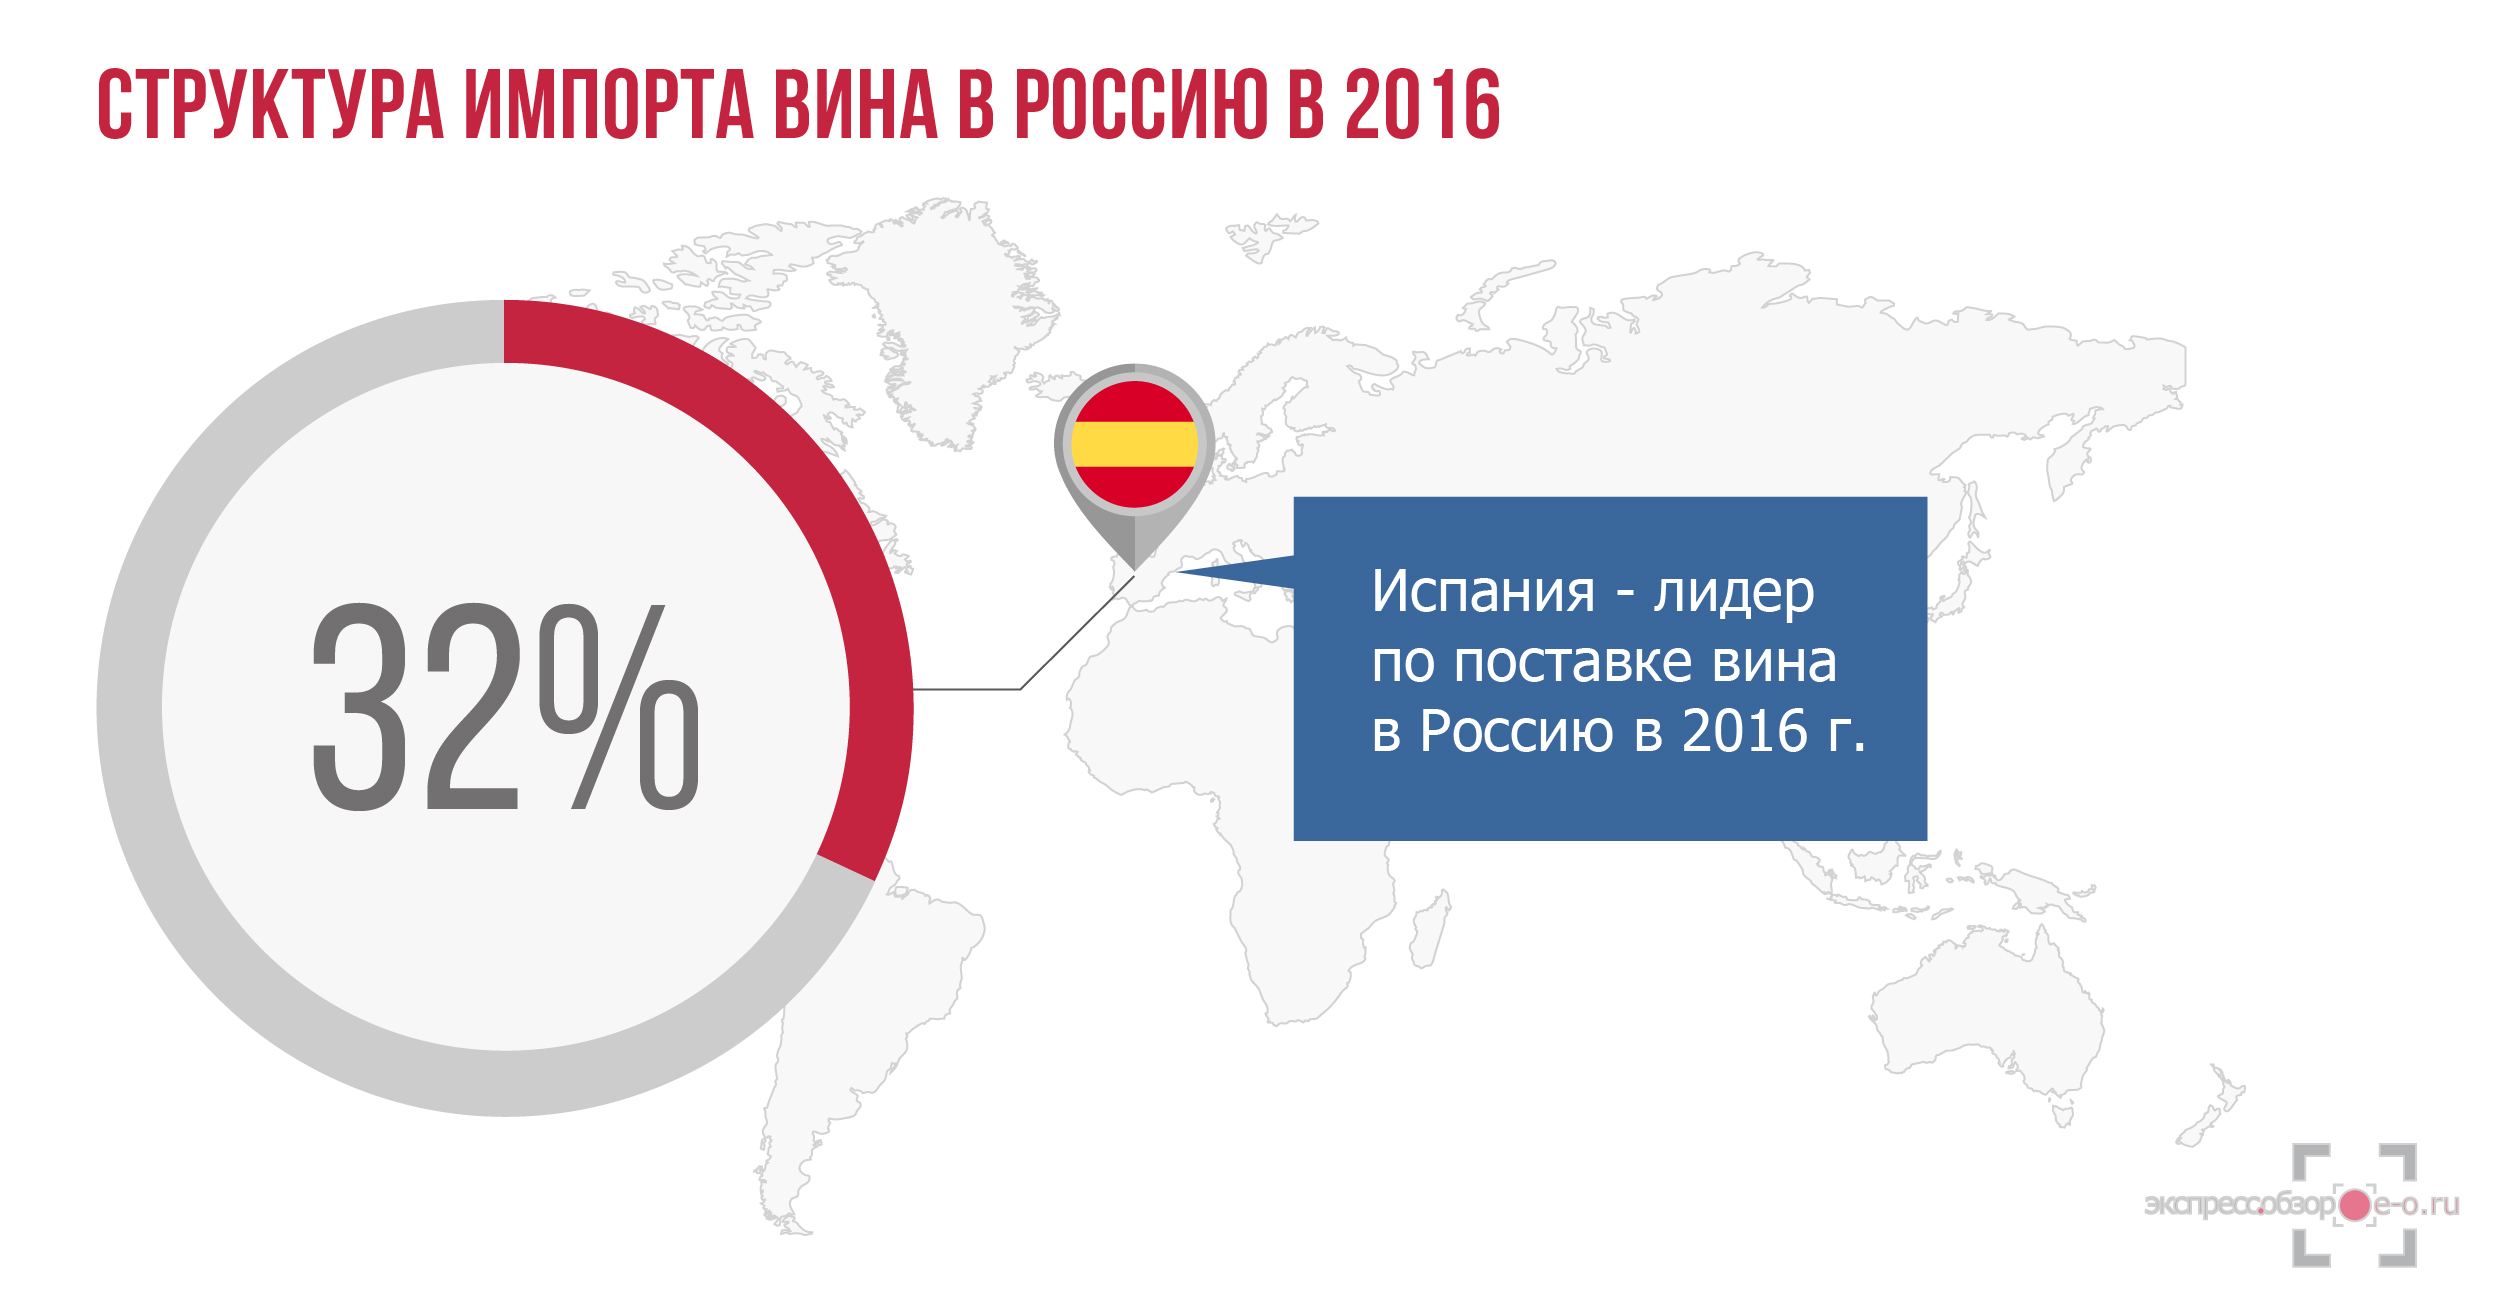 Структура импорта вина в Россию в 2016 году